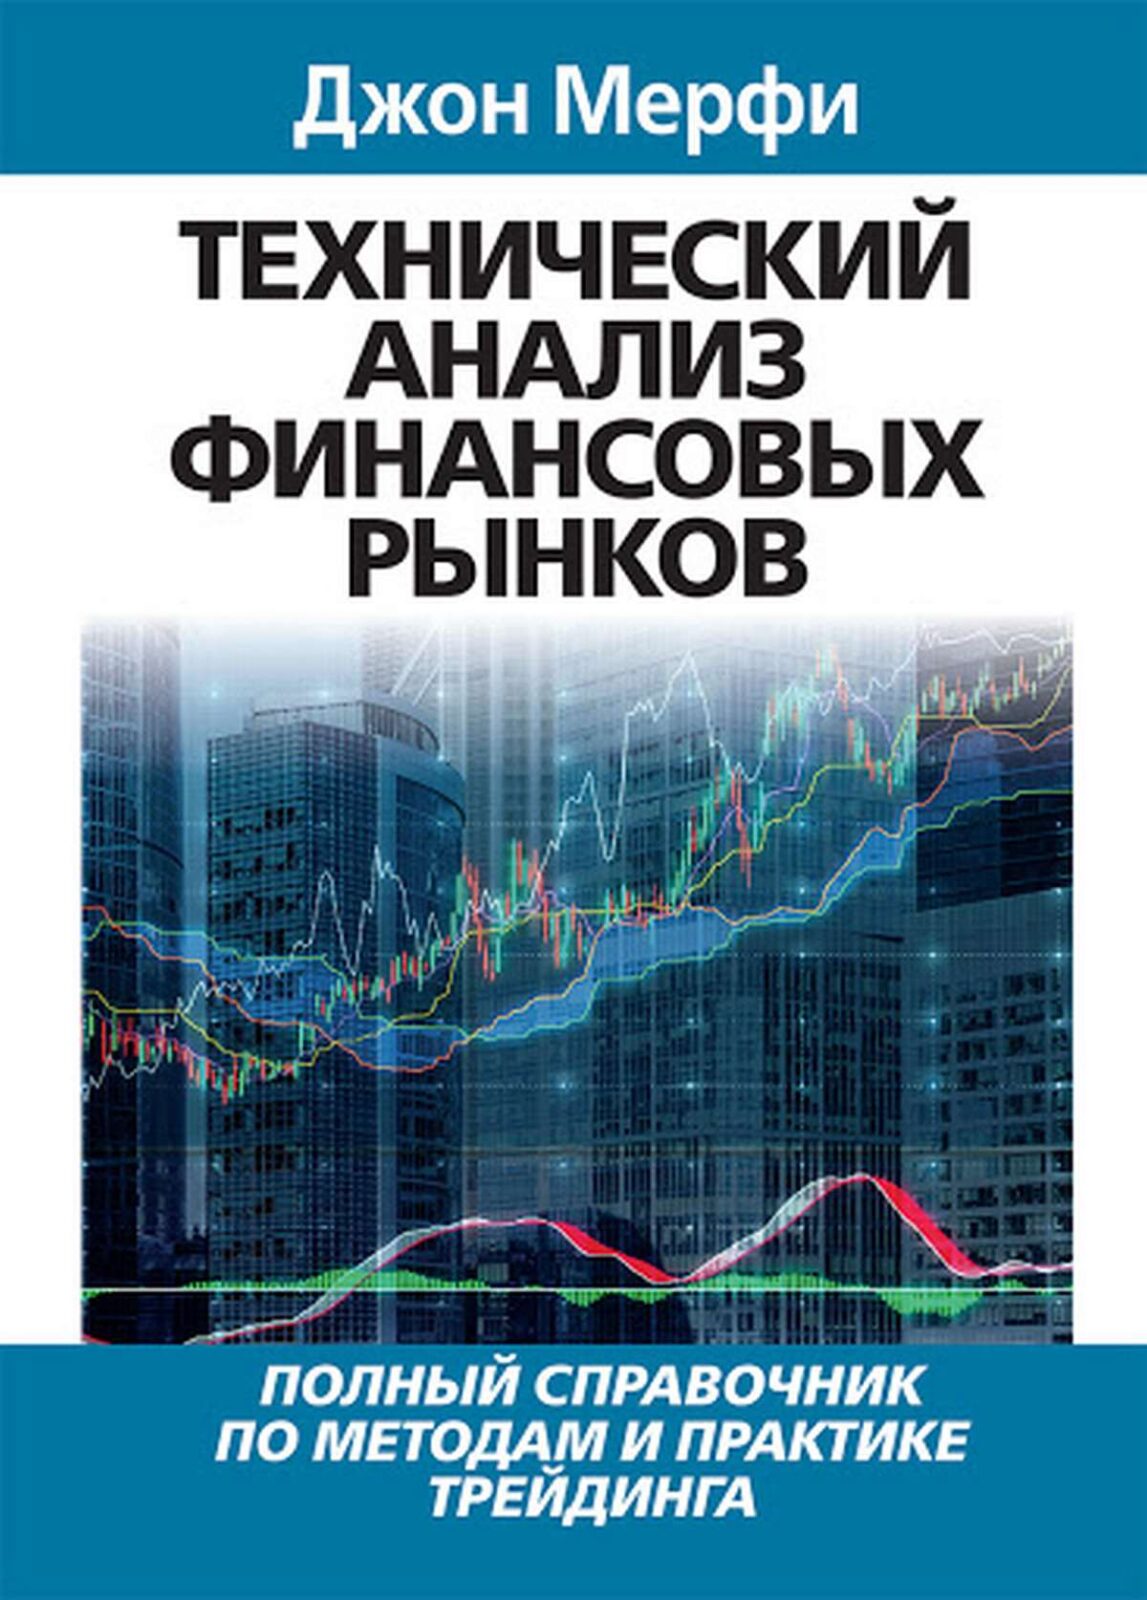 «Технический анализ фьючерсных рынков» Джона Мерфи